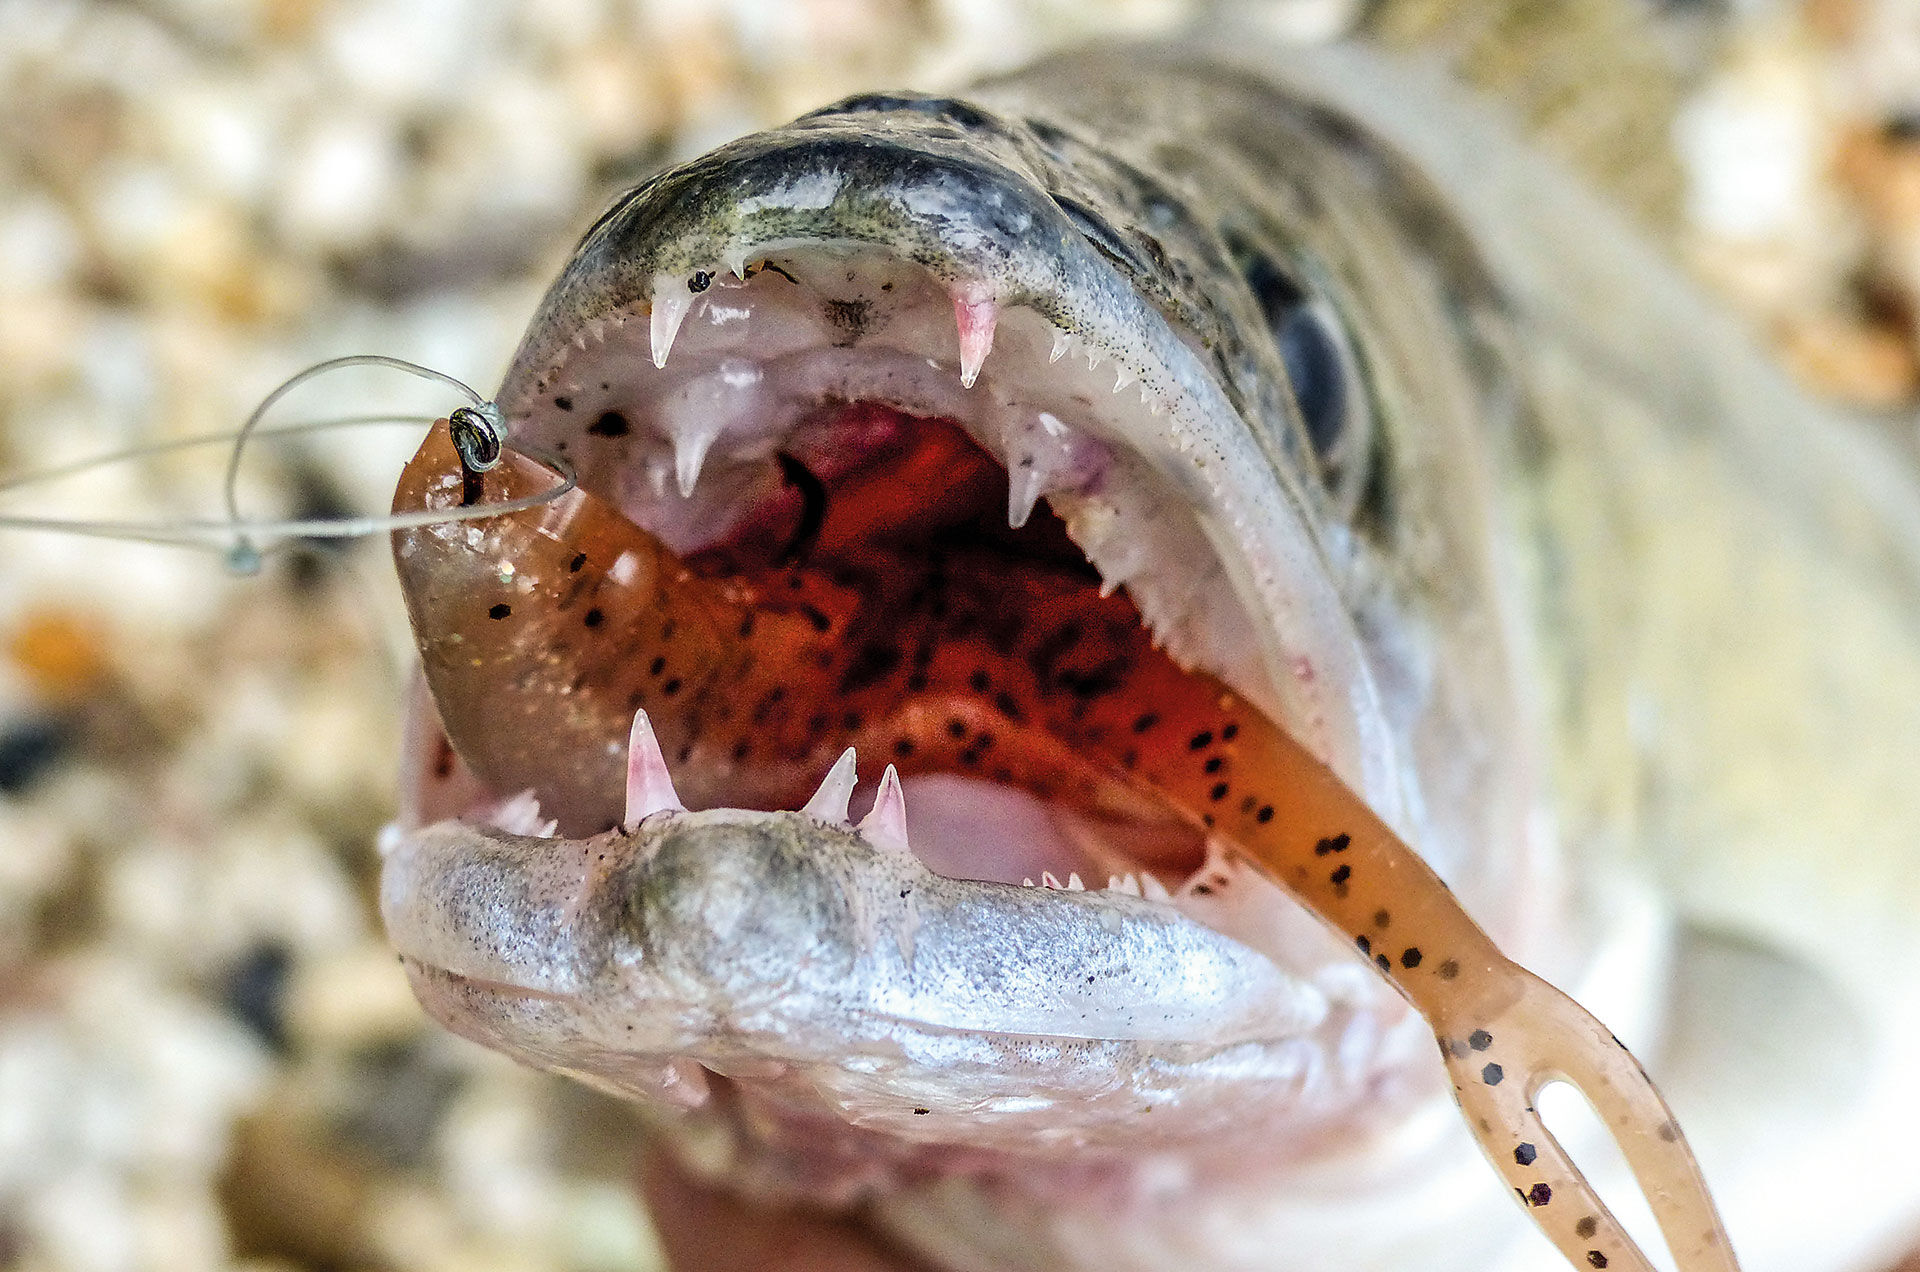  Weicher Gummifisch (Q-Fish 13) nach dem Einsaugen im Zandermaul. Der gefaltete Köder ist im Maul und der Einzelhaken (Gr. 1/0 bis 2/0) fasst häufig im Bereich des Gaumens.  